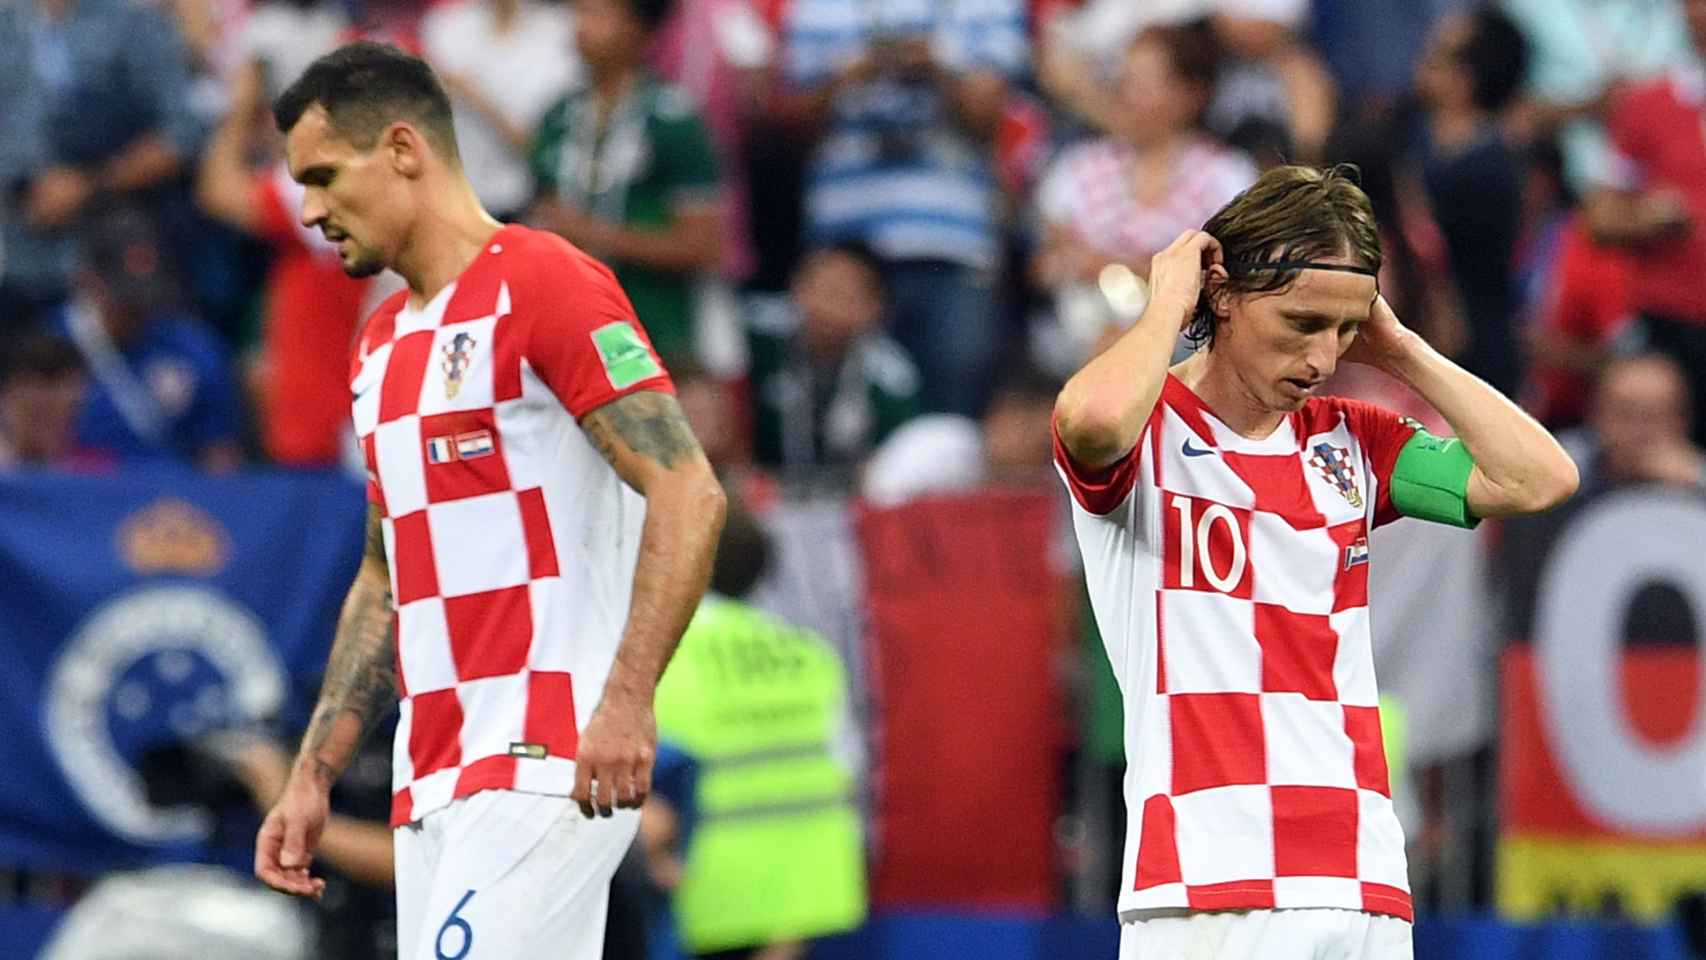 Lovren y Modric, durante la final del Mundial de Rusia 2018. Foto: EFE